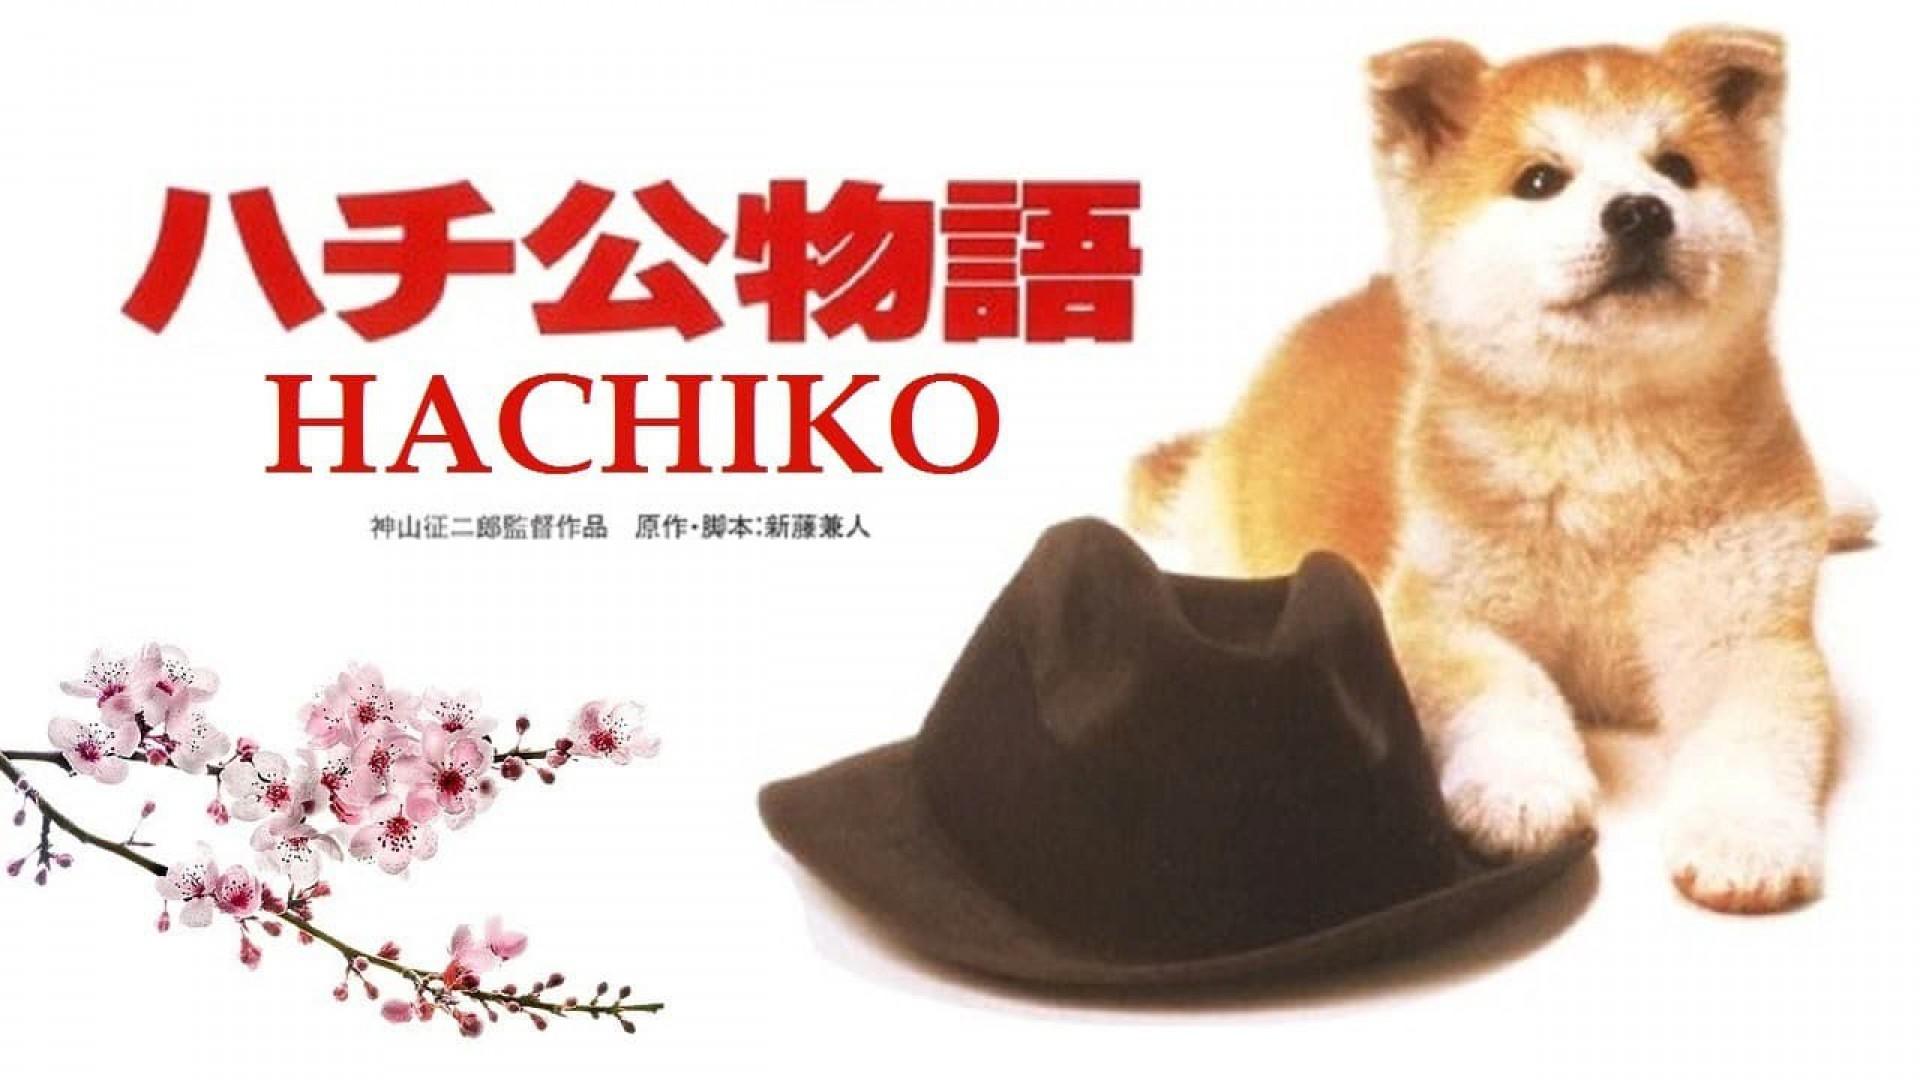 Hachi-ko